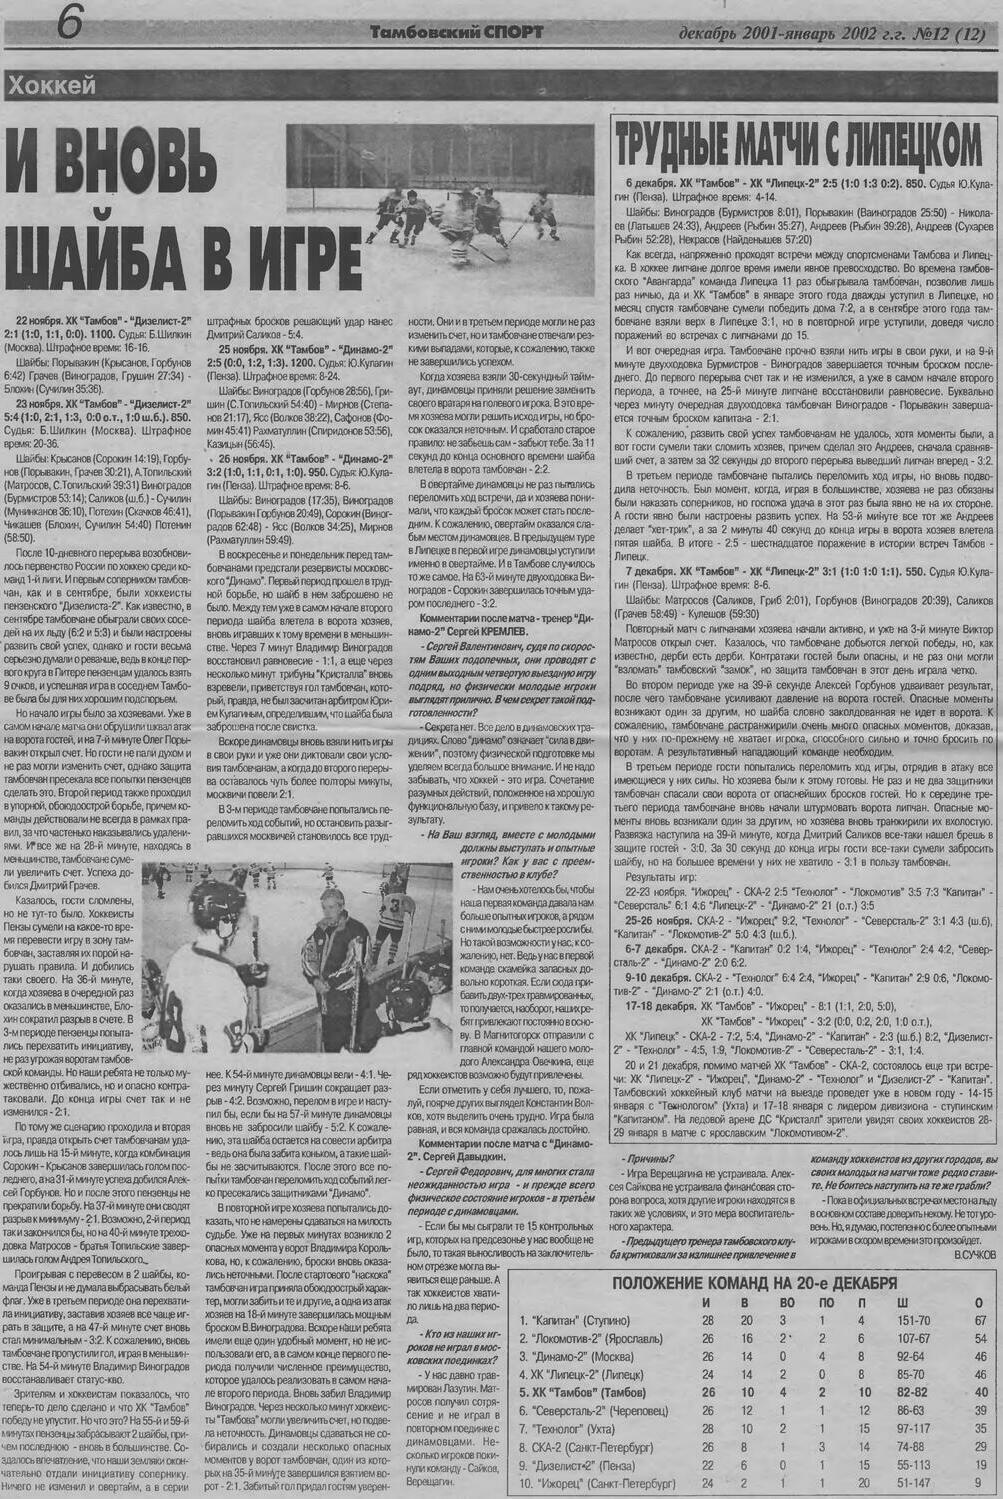 Газета "Тамбовский спорт" №12 от 12-01.2002г. (Ст. 6)